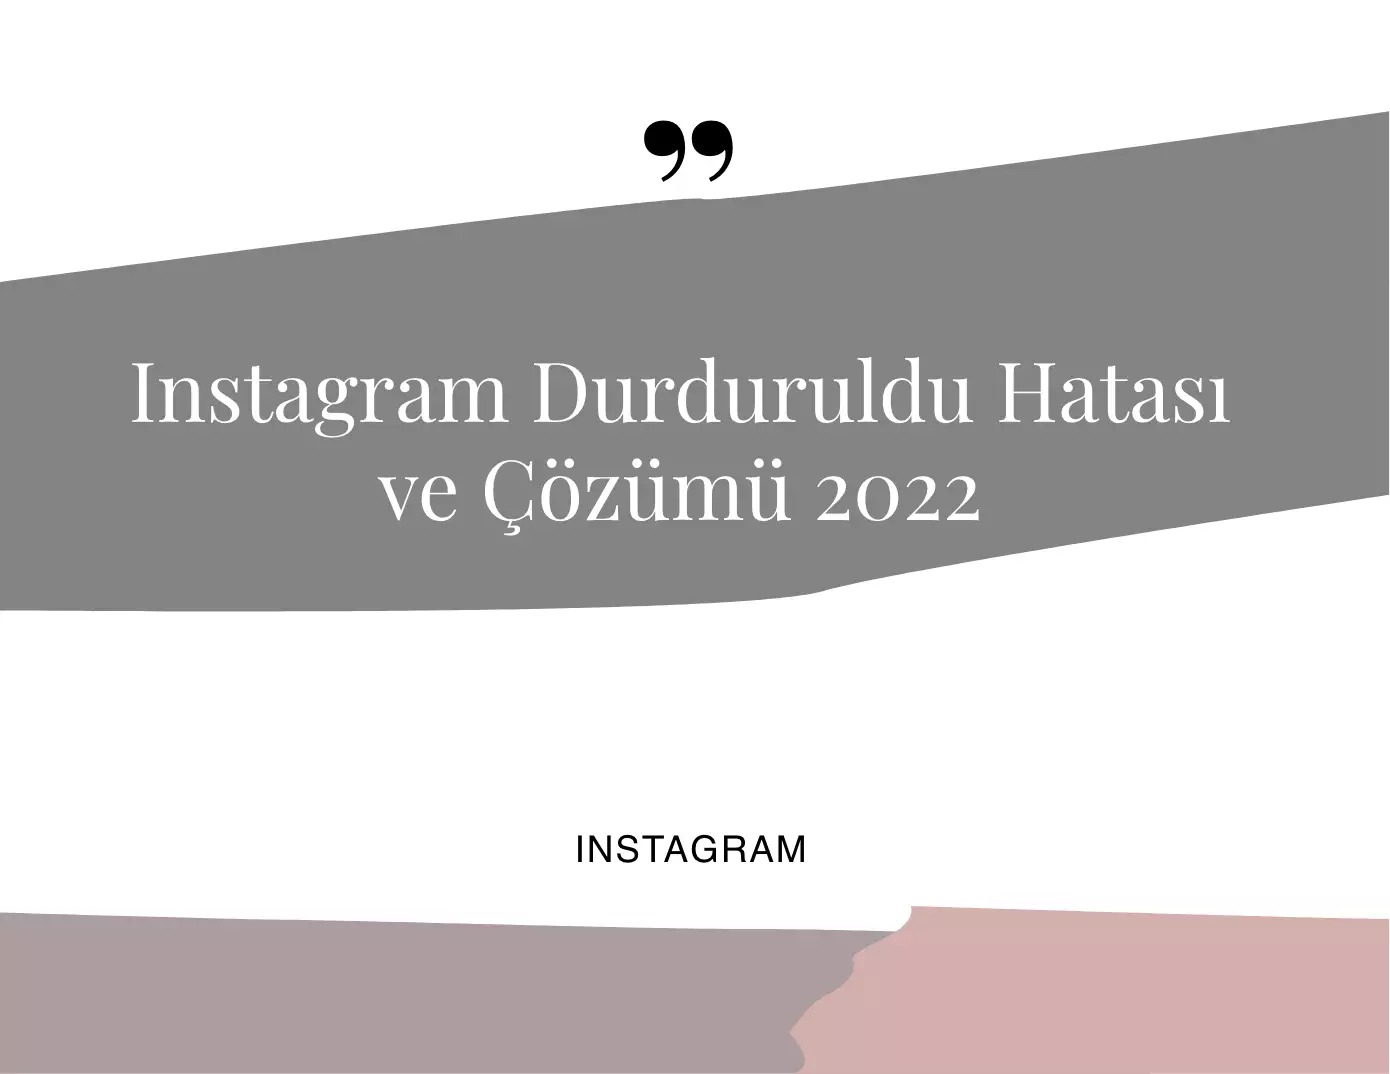 Instagram Durduruldu Hatası ve Çözümü 2022